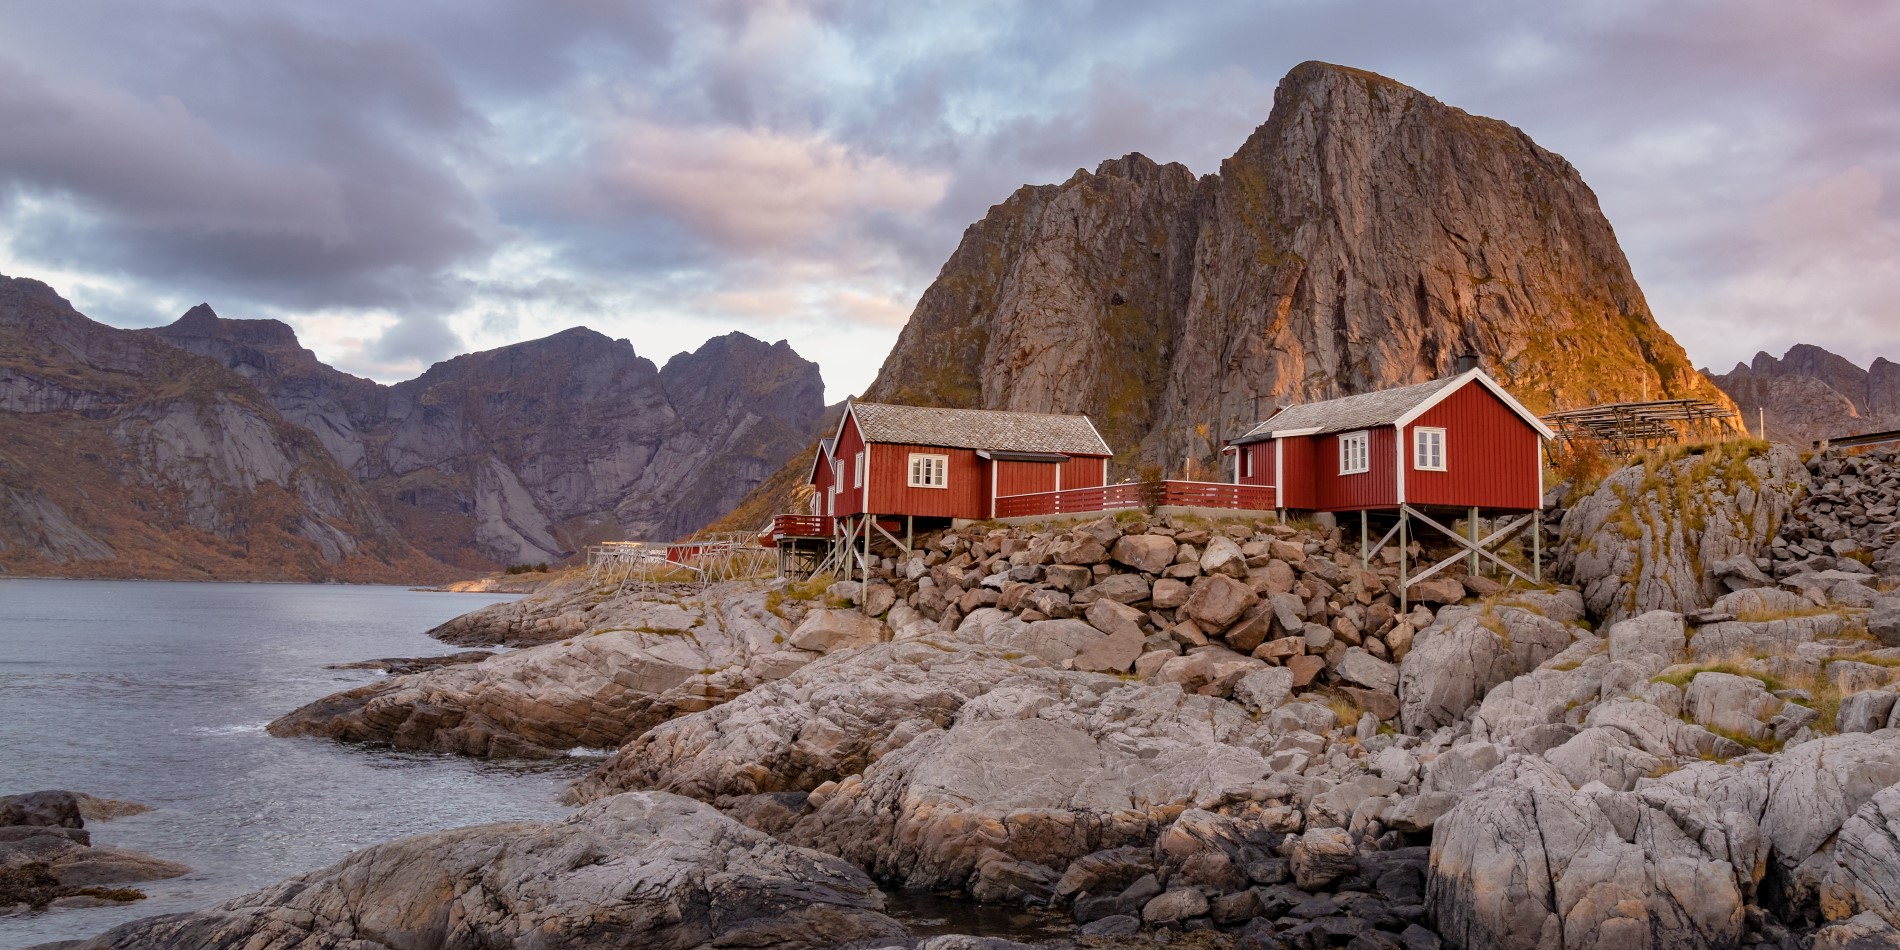 Røde norske hytter ved kysten